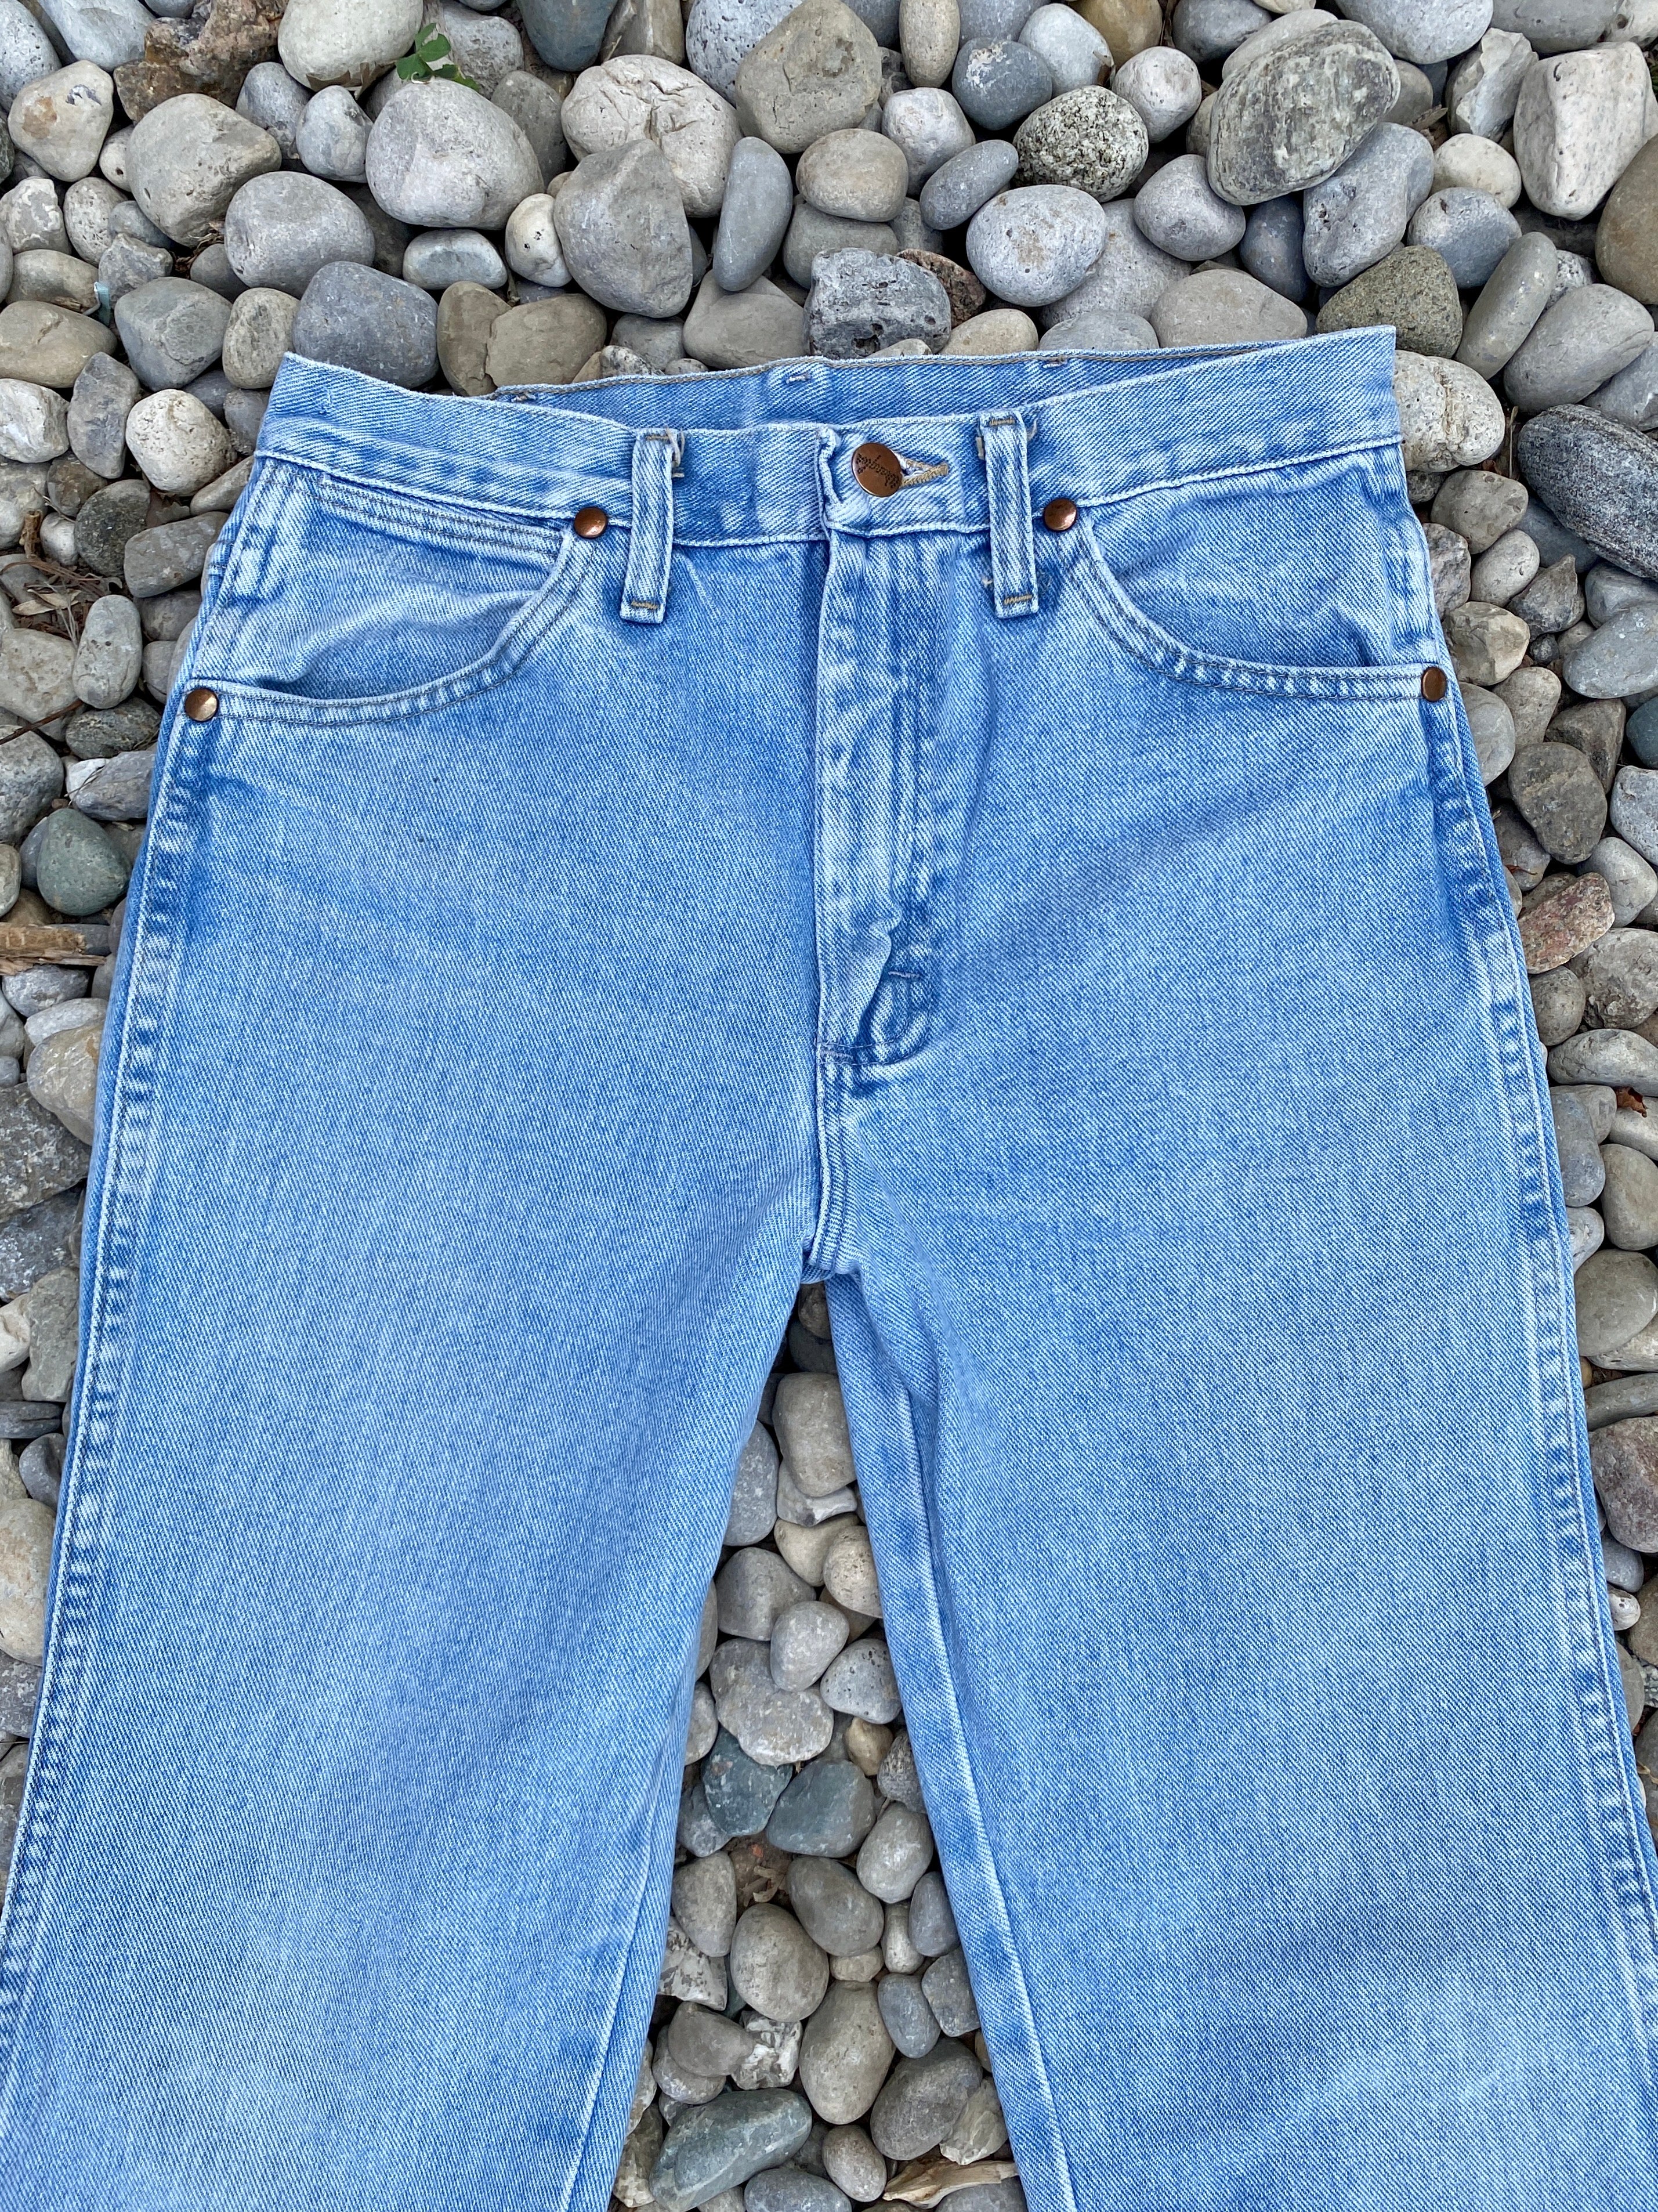 Vintage Wrangler Light Wash Jeans size 28